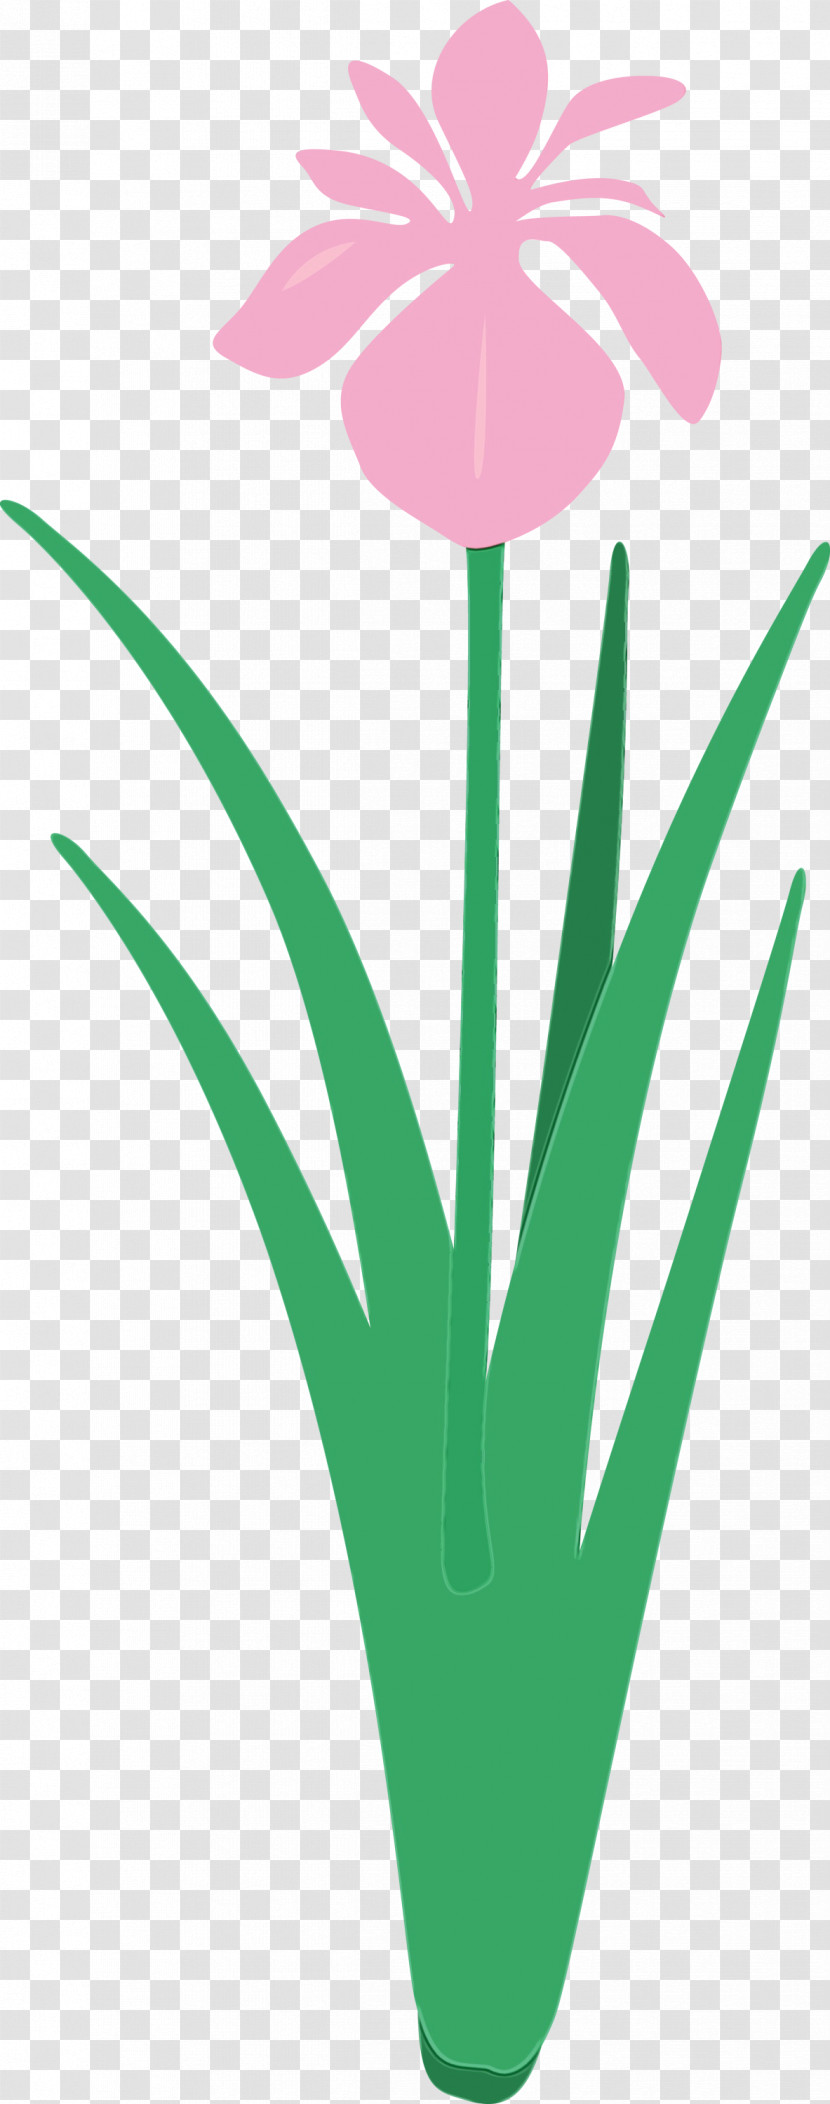 Green Leaf Plant Grass Flower Transparent PNG